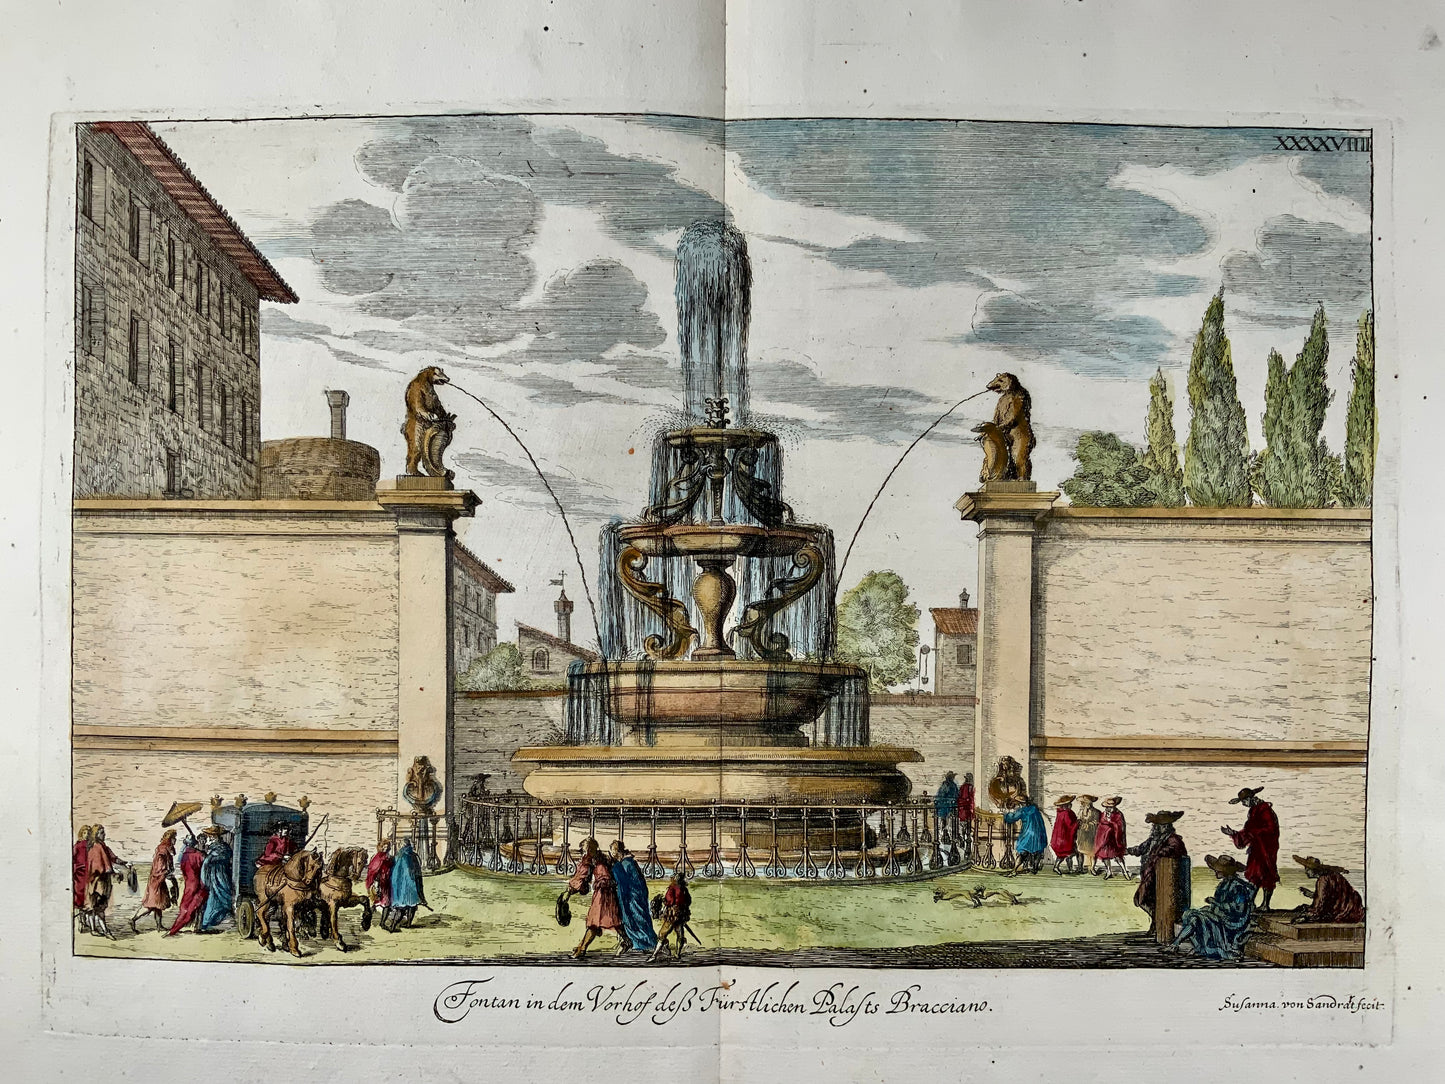 1679 Susanna von Sandrart, Fountain Bracciano in Rome, Italy, hand colored double folio, classical architecture